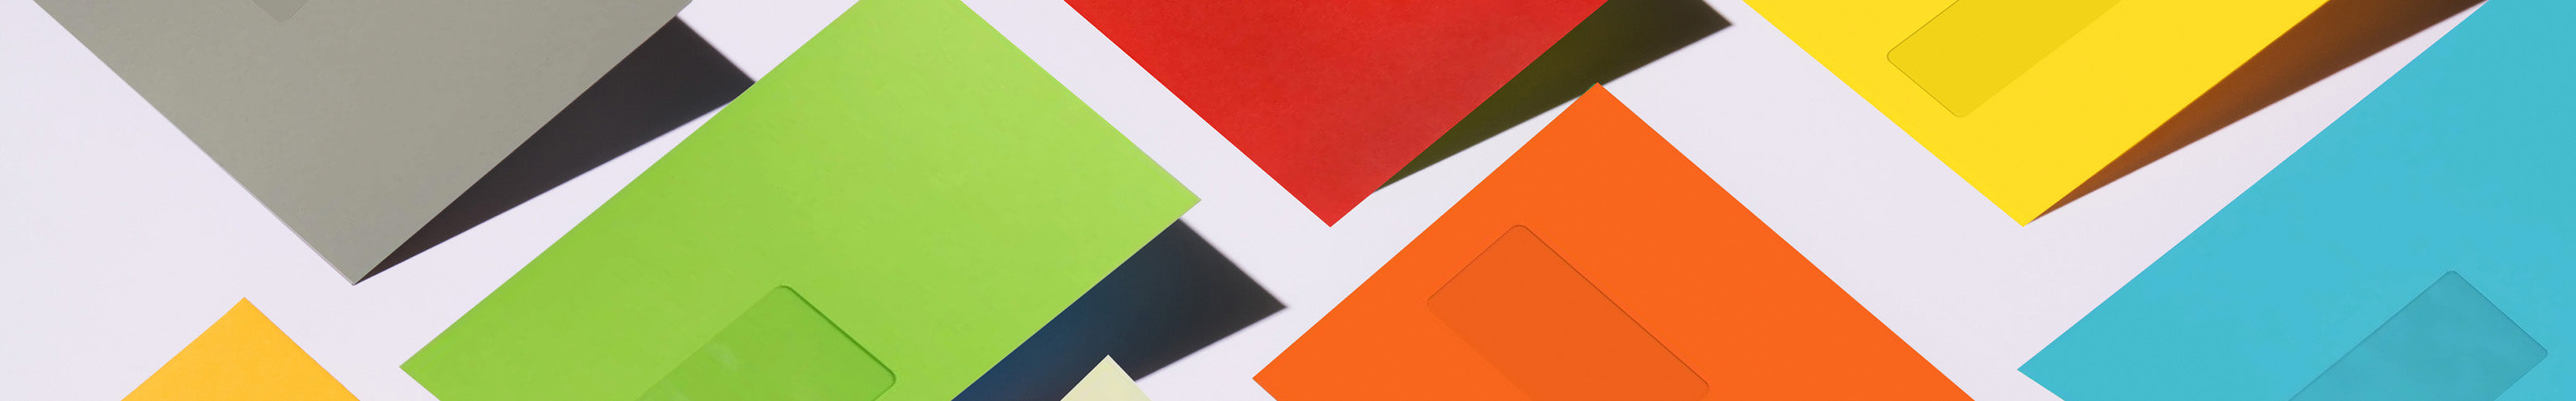 Coloured Mailing Window Envelopes